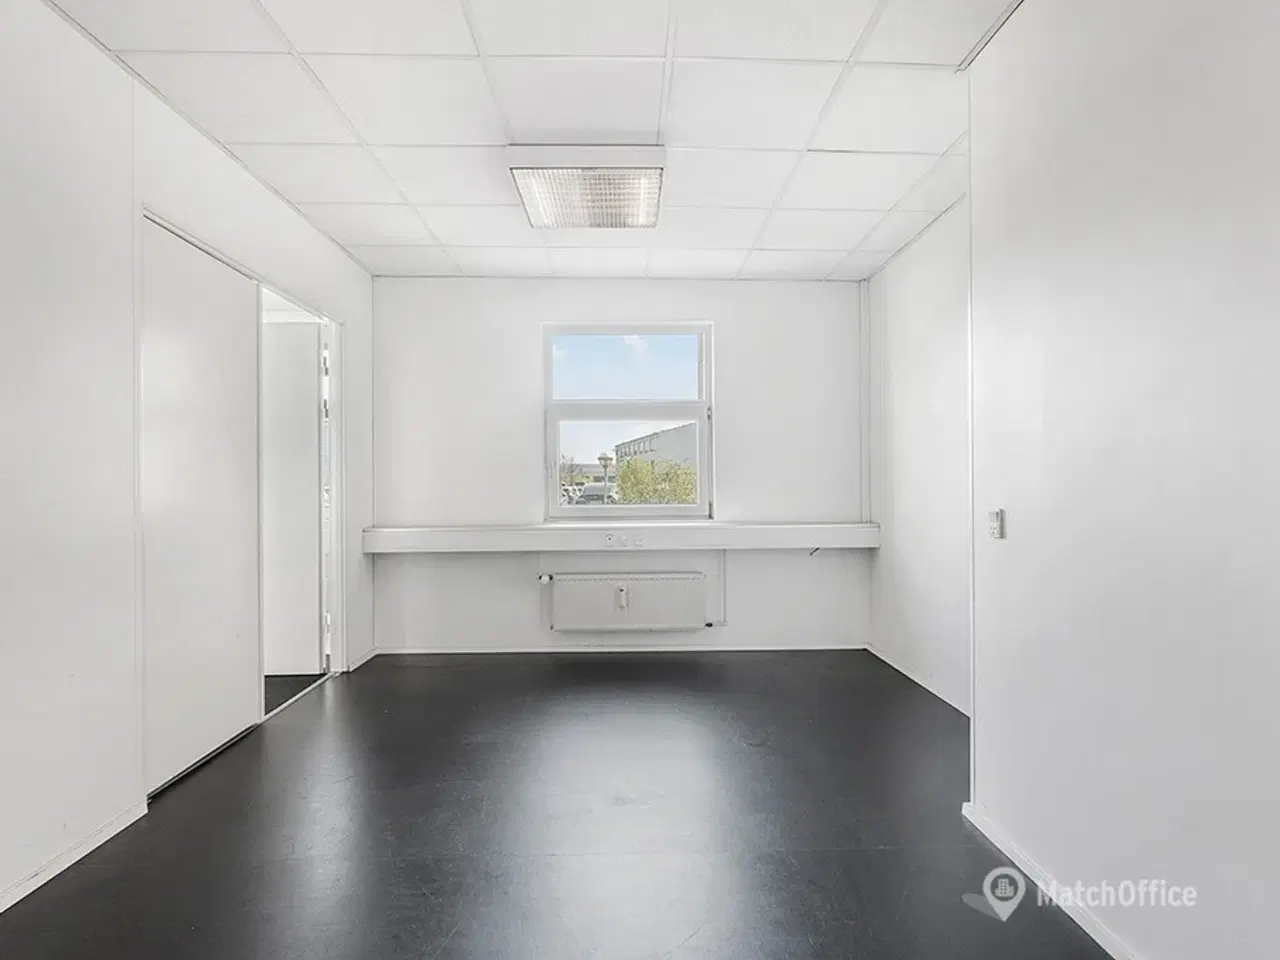 Billede 7 - Velindrettet kontorlejemål med mødelokale på 367 m2 tilbydes i præsentabel ejendom med central placering i Gladsaxe Erhvervsby.